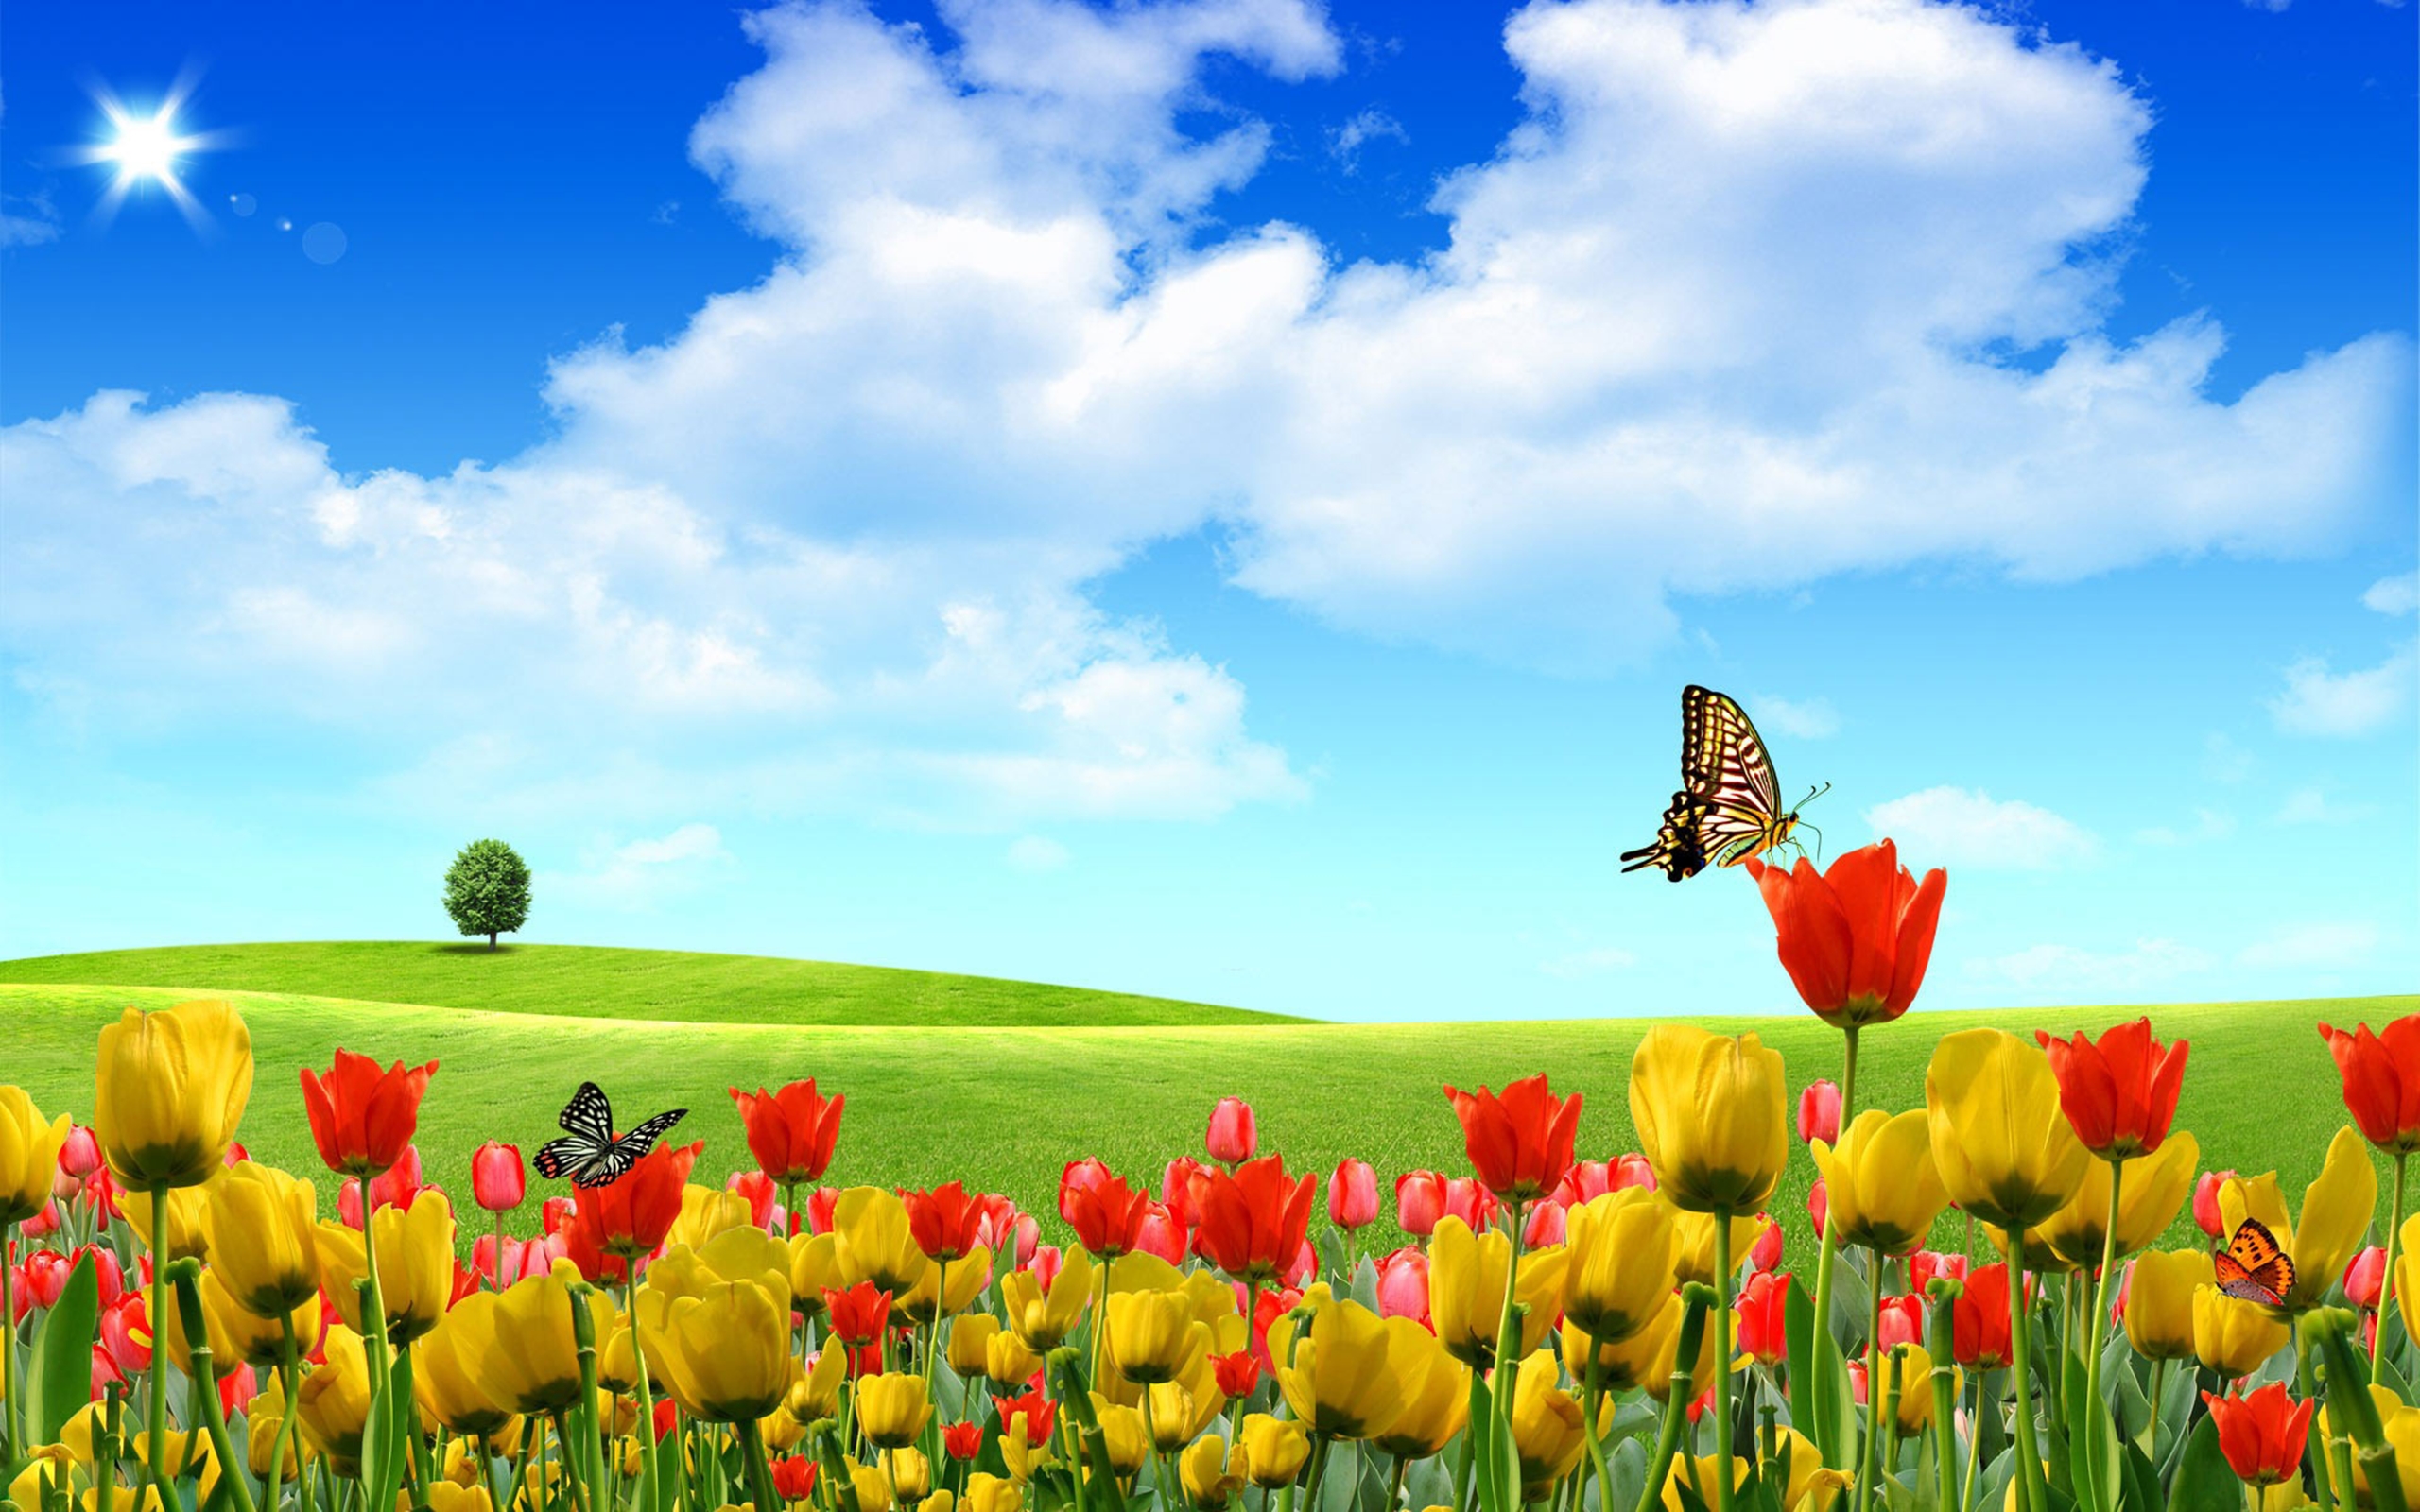 Butterfly On Tulip Field Artistic Wallpaper 2560x1600 ...